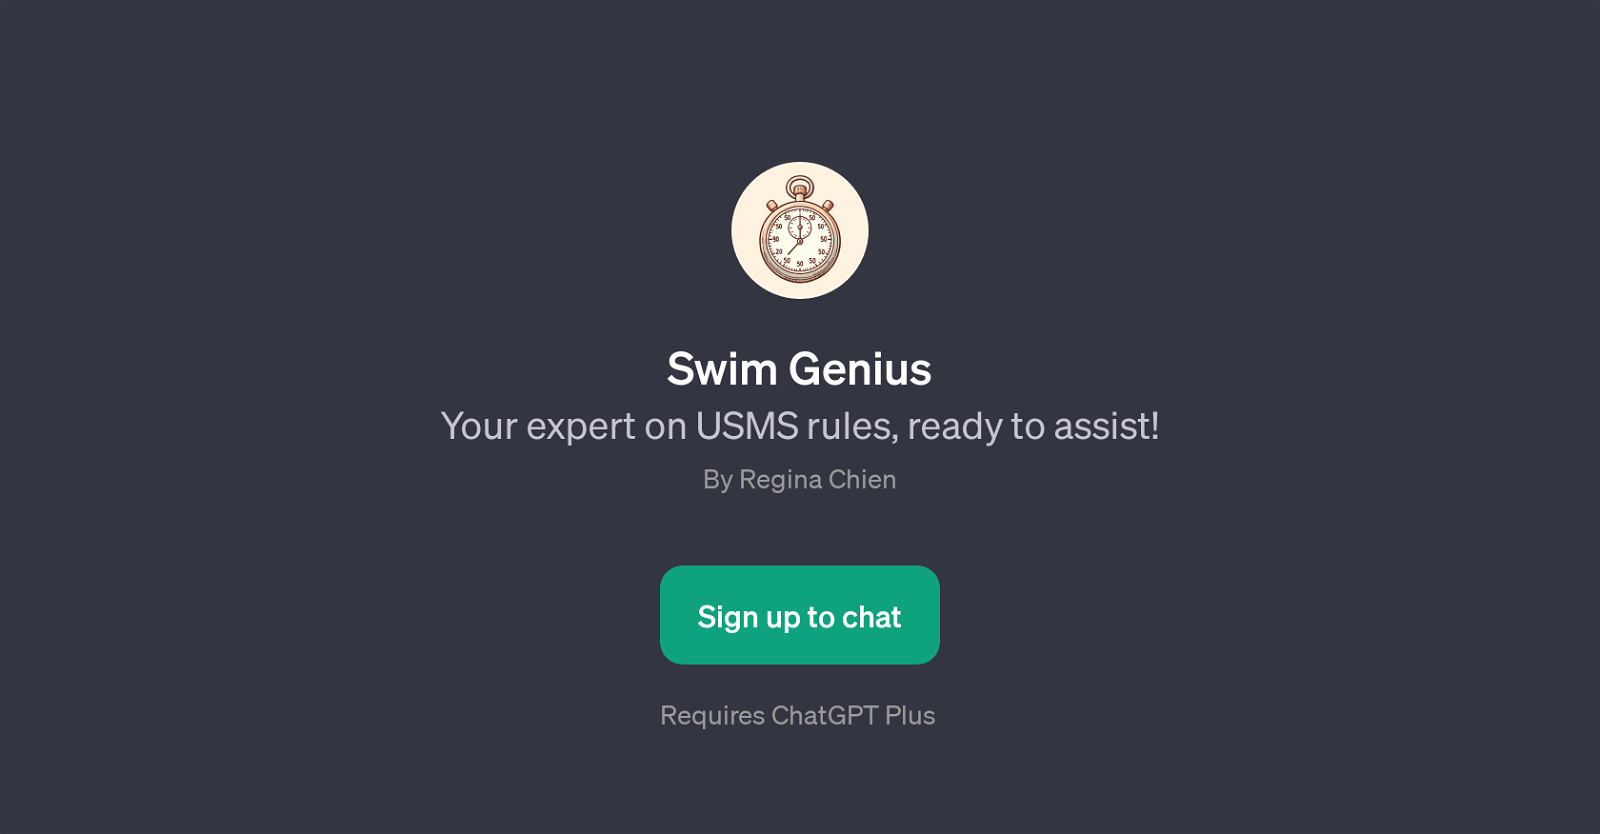 Swim Genius website